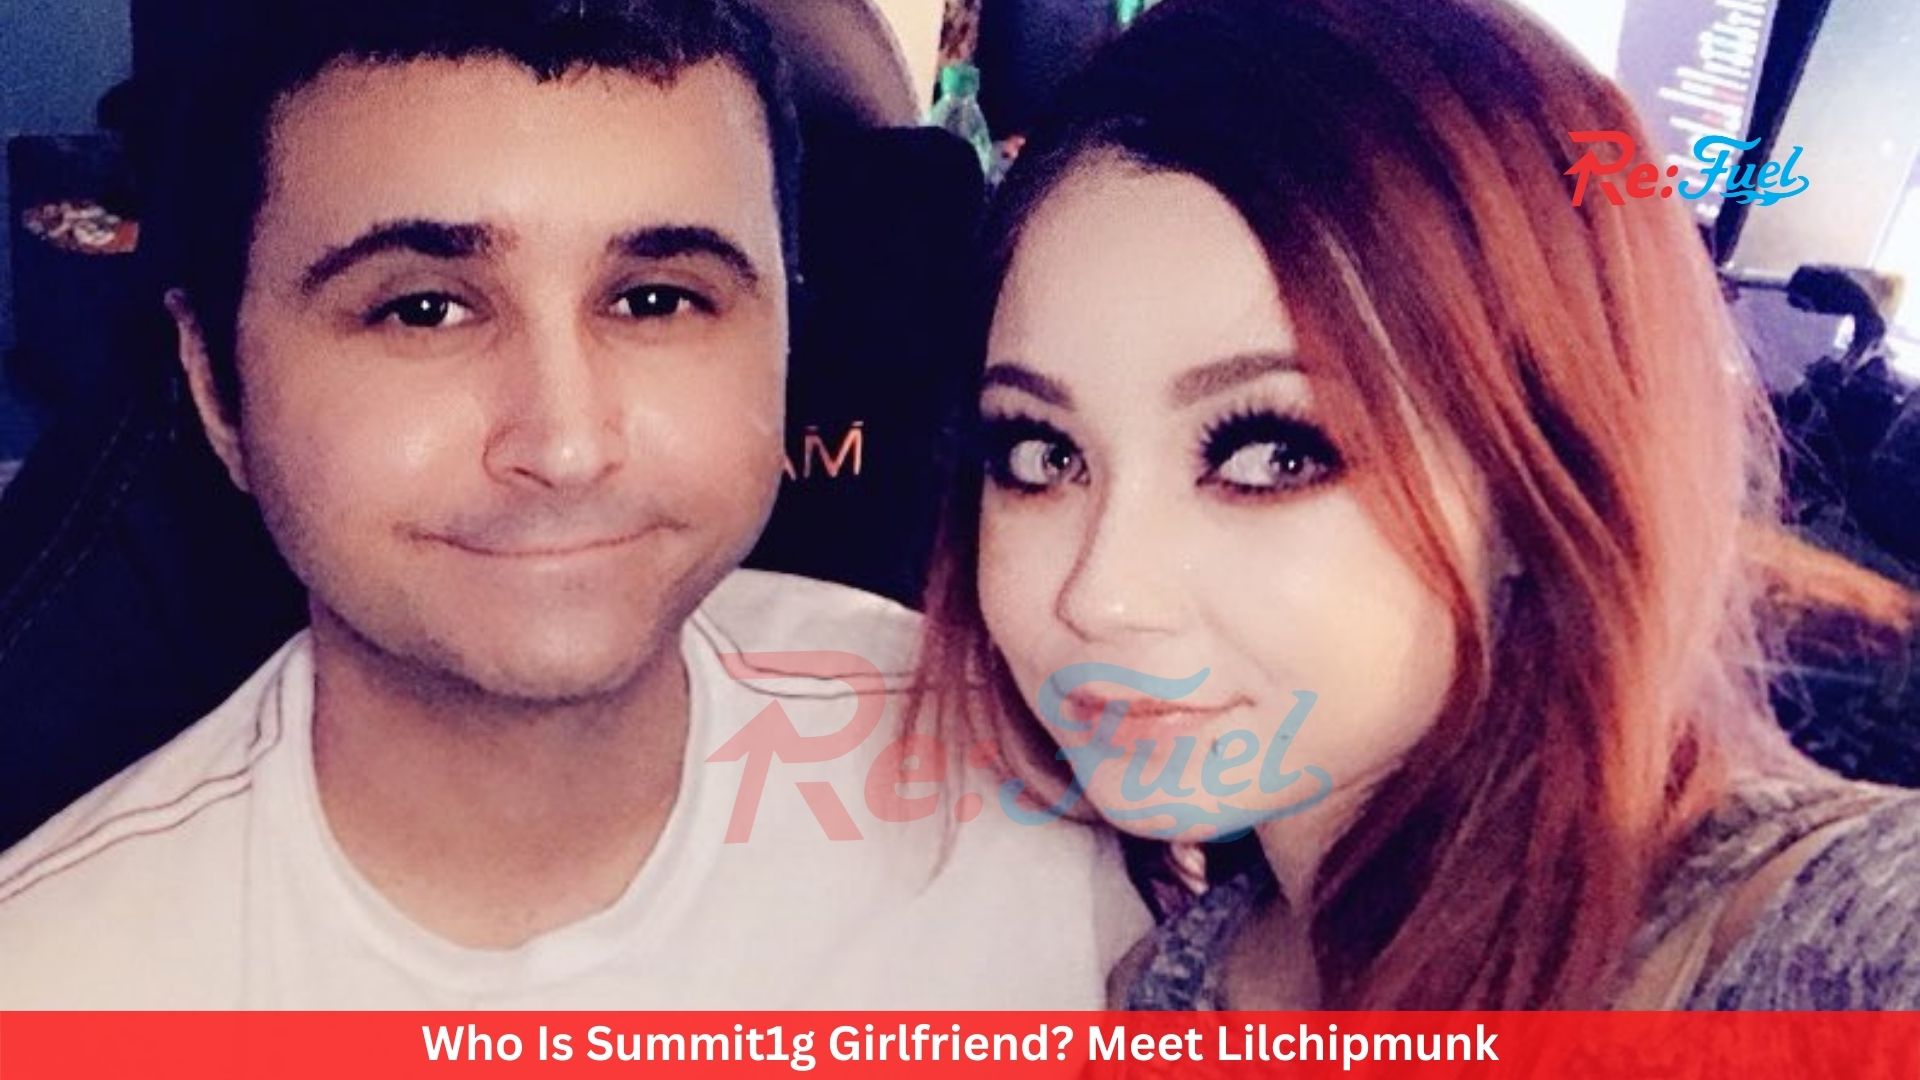 Who Is Summit1g Girlfriend? Meet Lilchipmunk